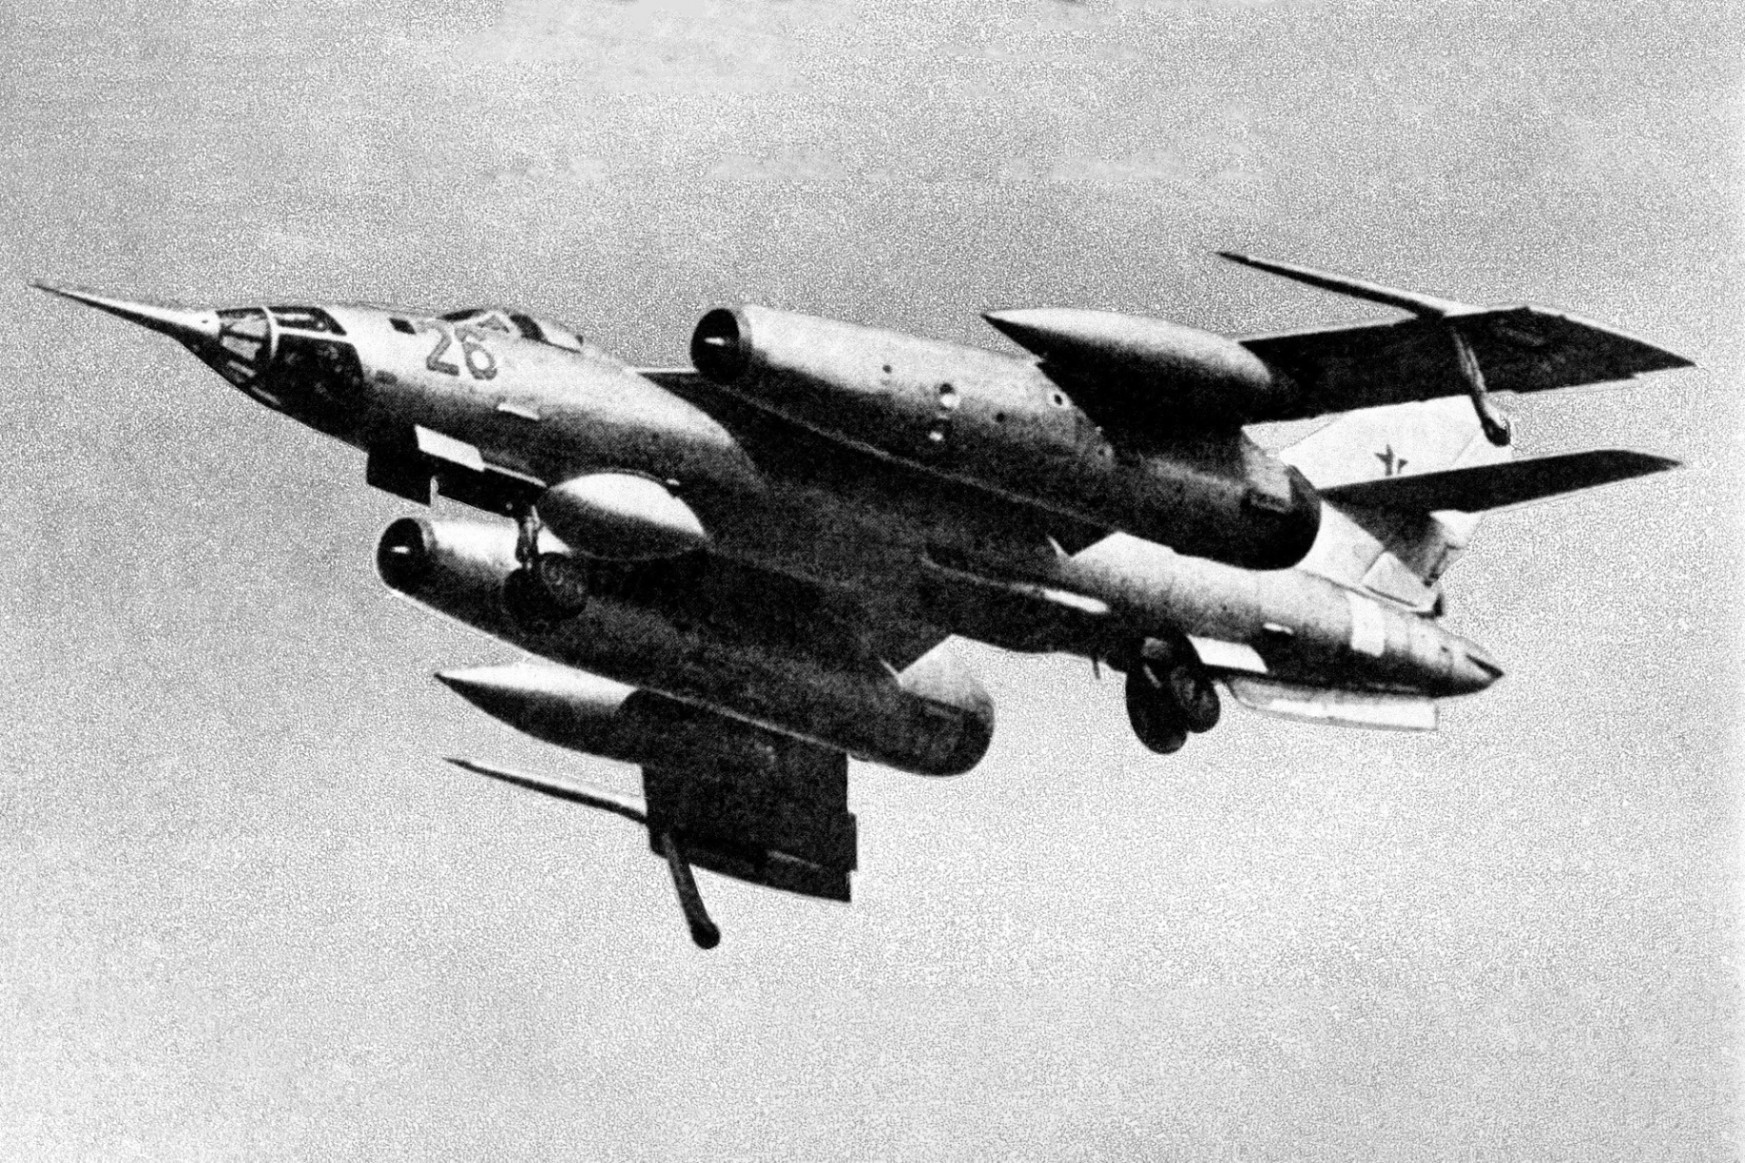 A szovjet vadászgép, amely magyar házakra zuhant, de alig került be a hírekbe